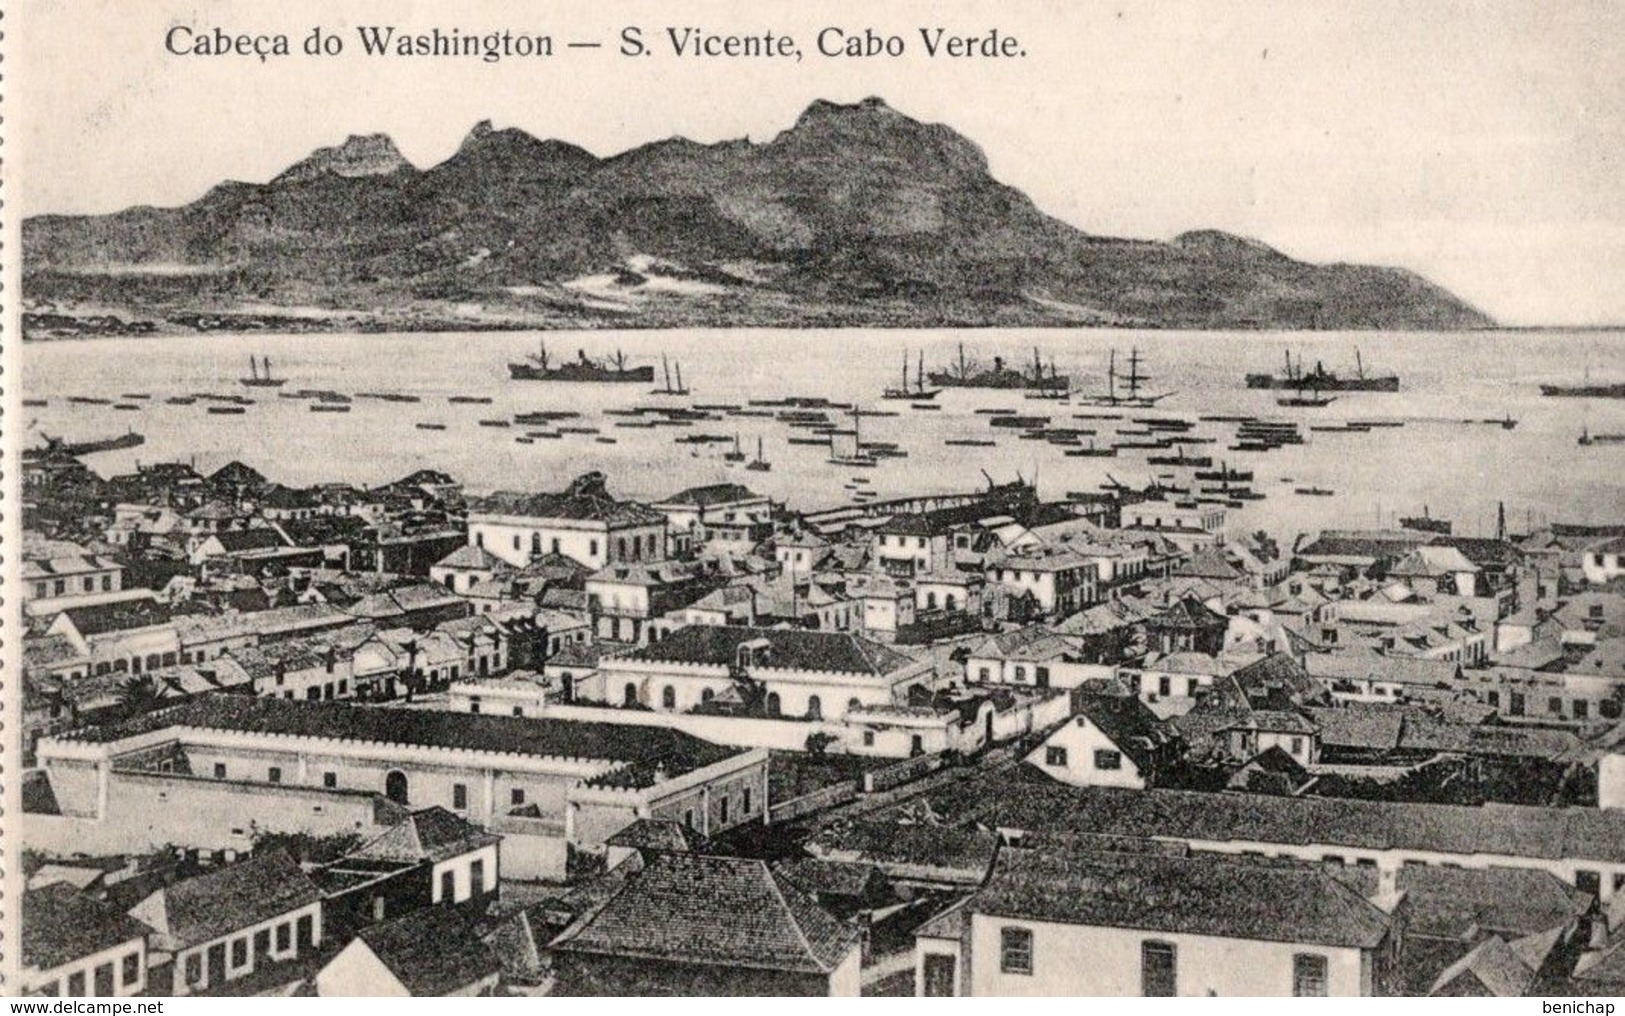 CPA CAP VERT - CABECA DO WASHINGTON - S. VICENTE - CABO VERDE - NEUVE - NON CIRCULEE - Capo Verde